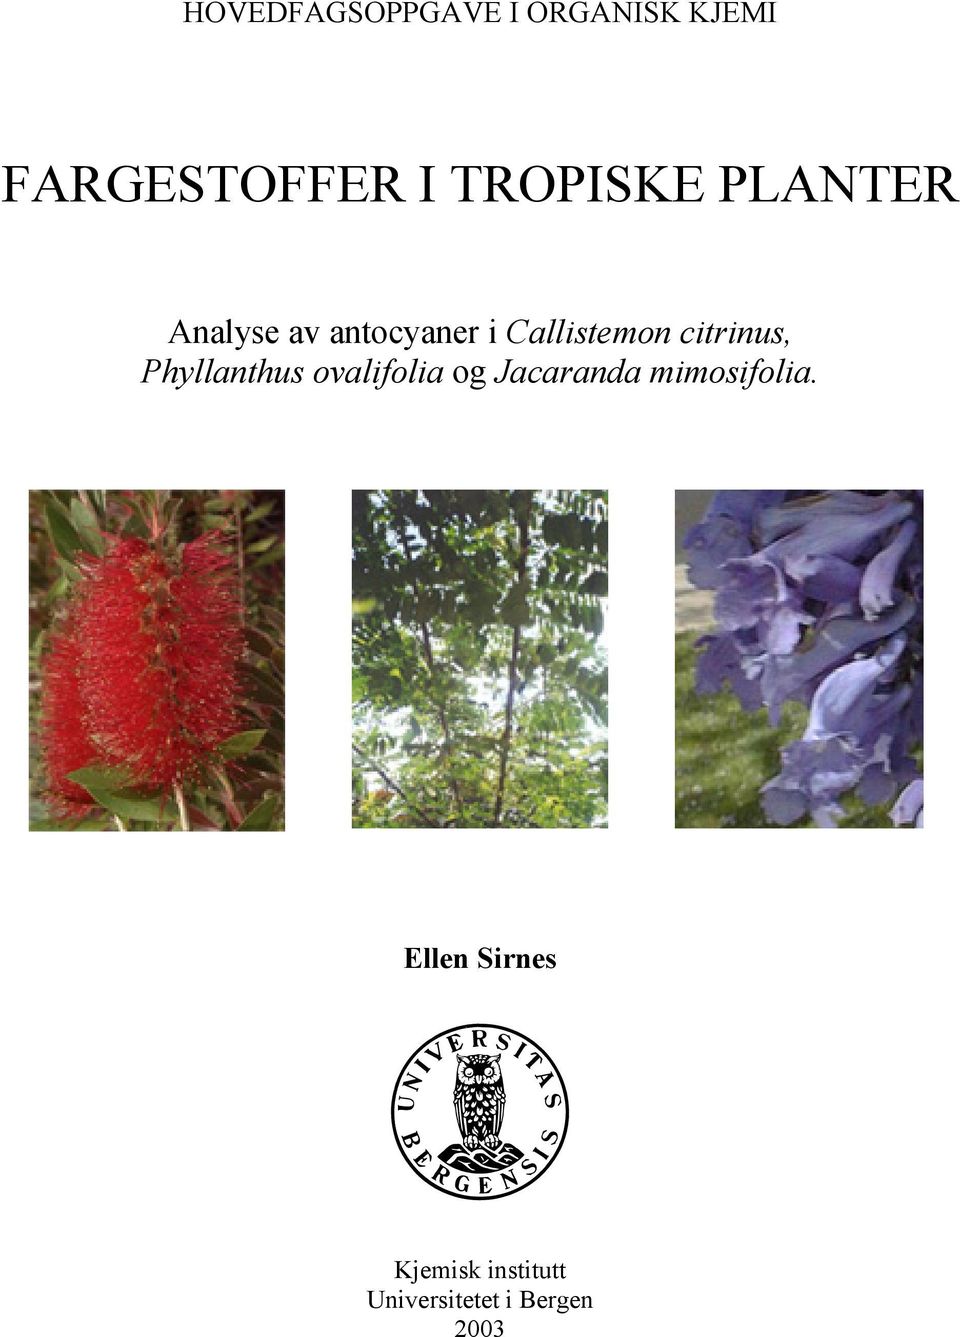 Phyllanthus ovalifolia og Jacaranda mimosifolia.